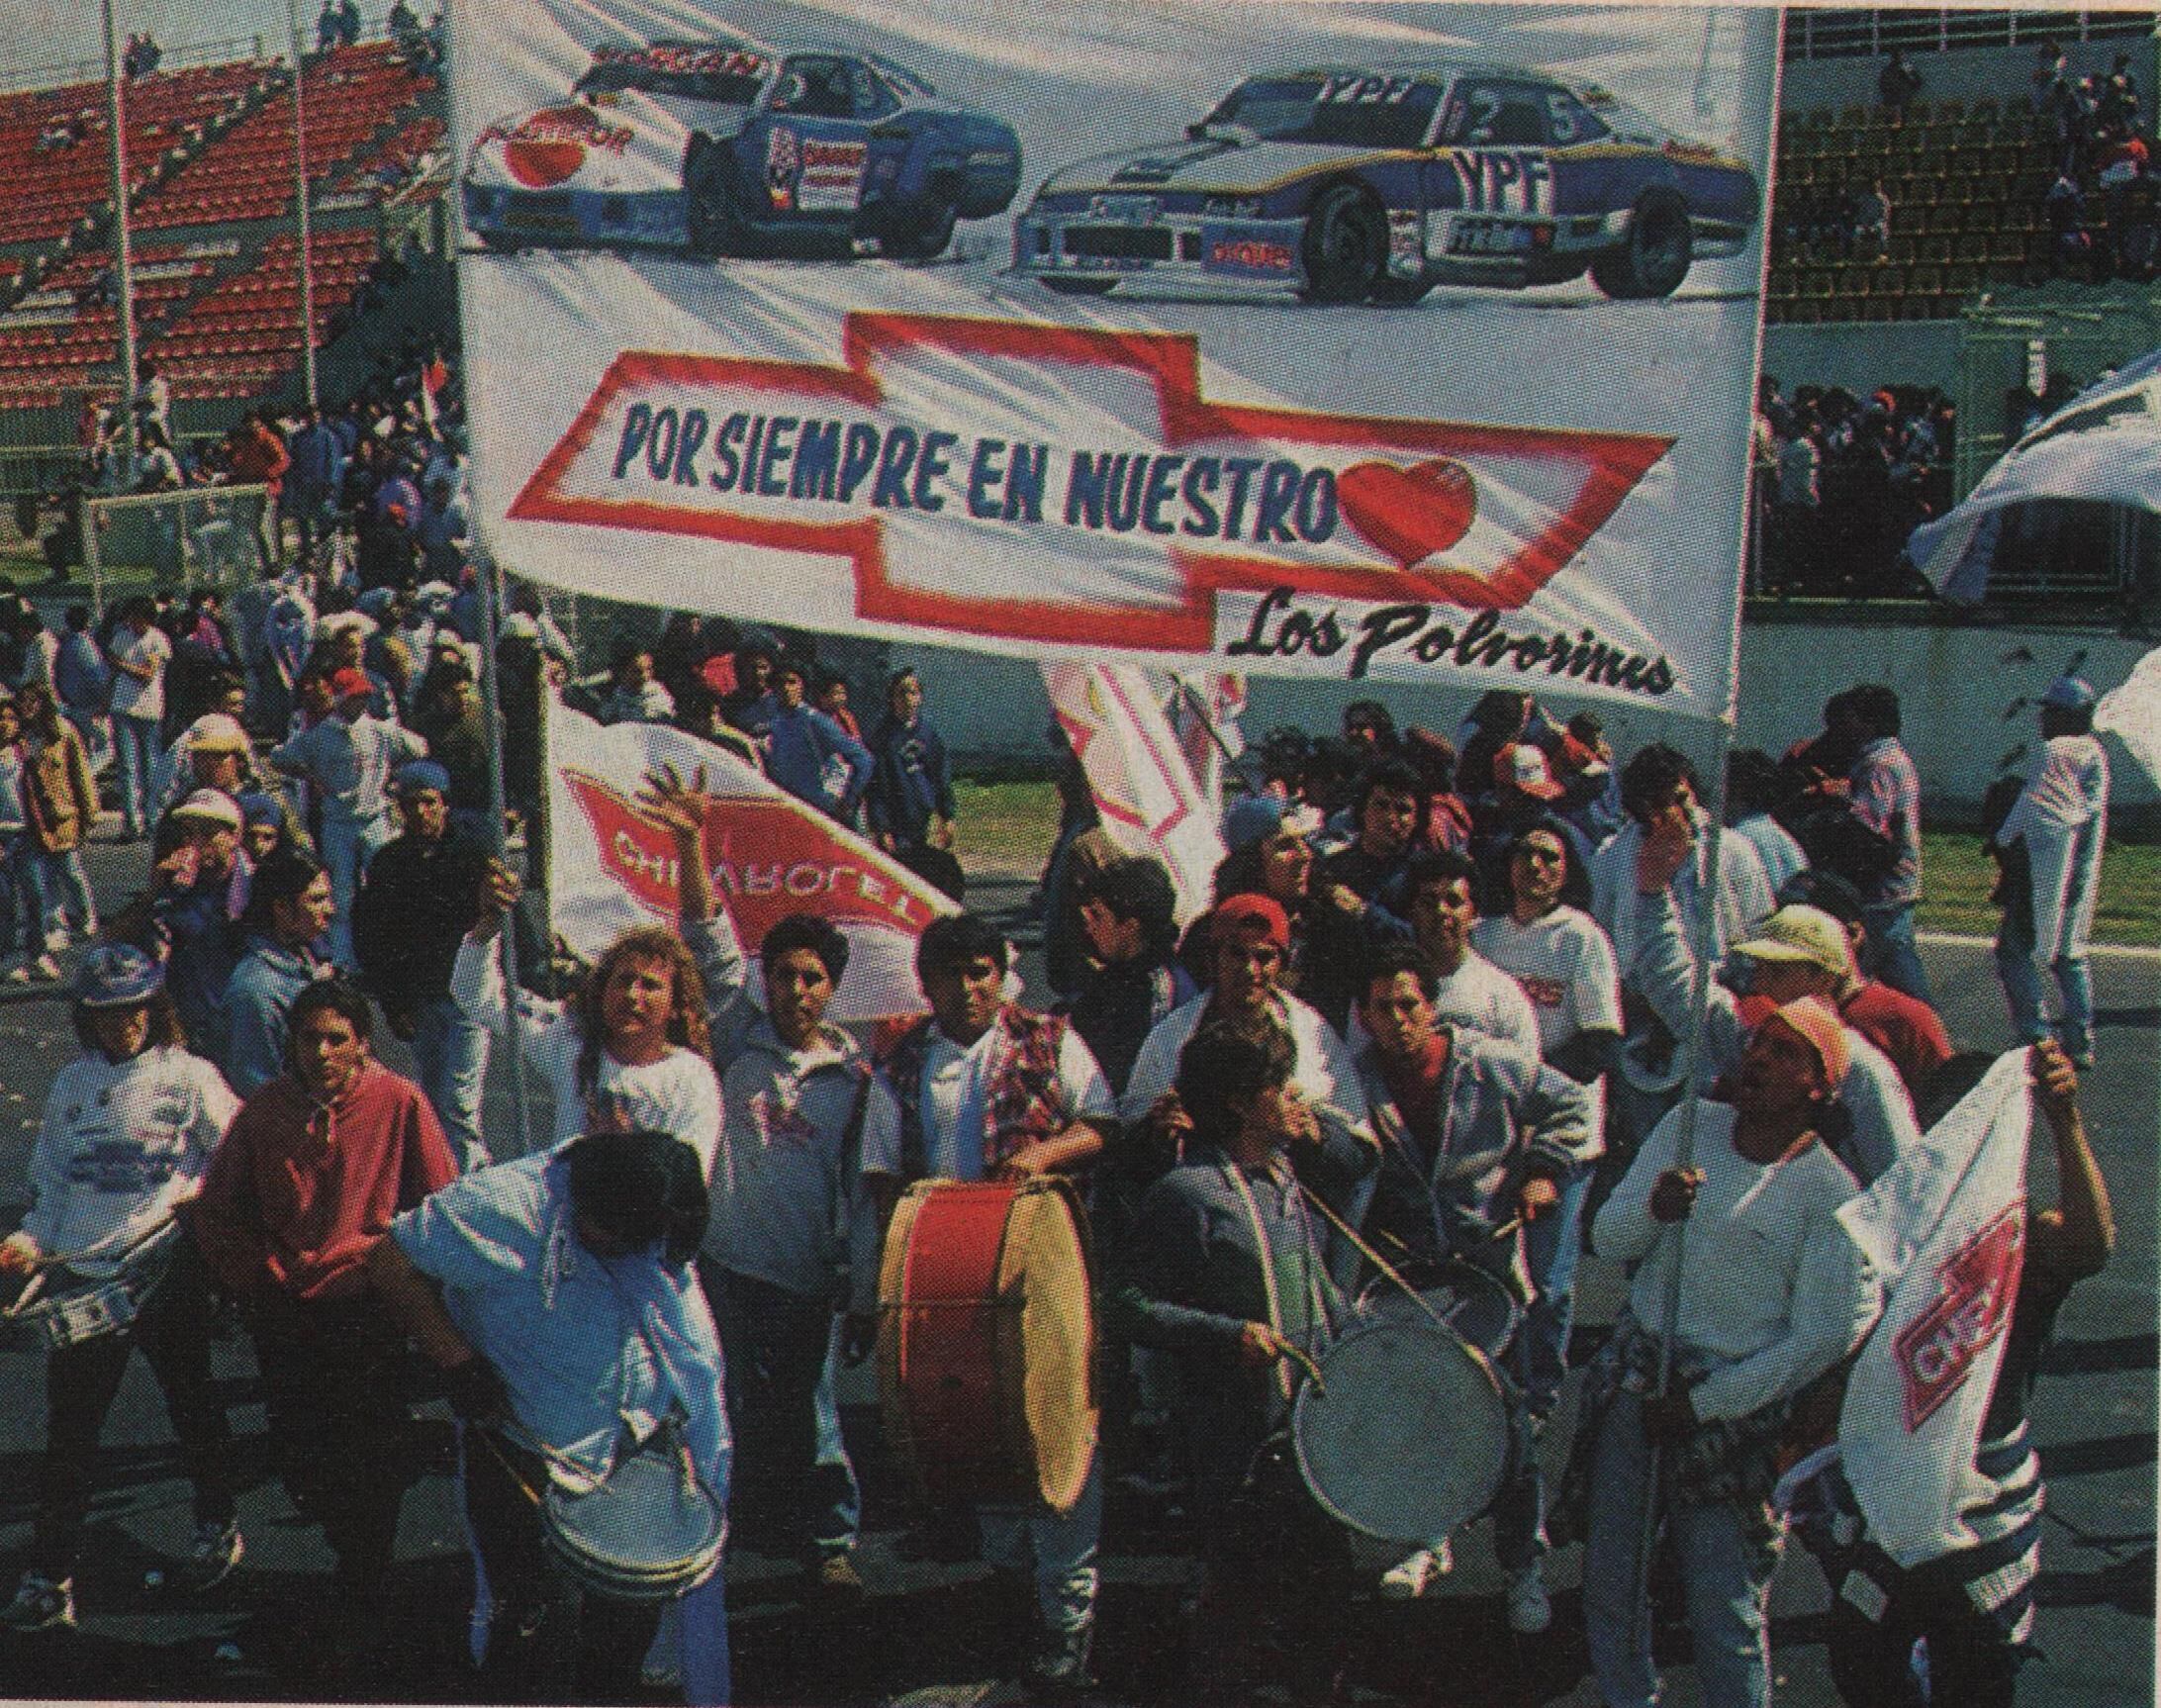 La hinchada de Chevrolet homenajeando a Mouras y Morresi, dos de sus máximos ídolos históricos (archivo CORSA)